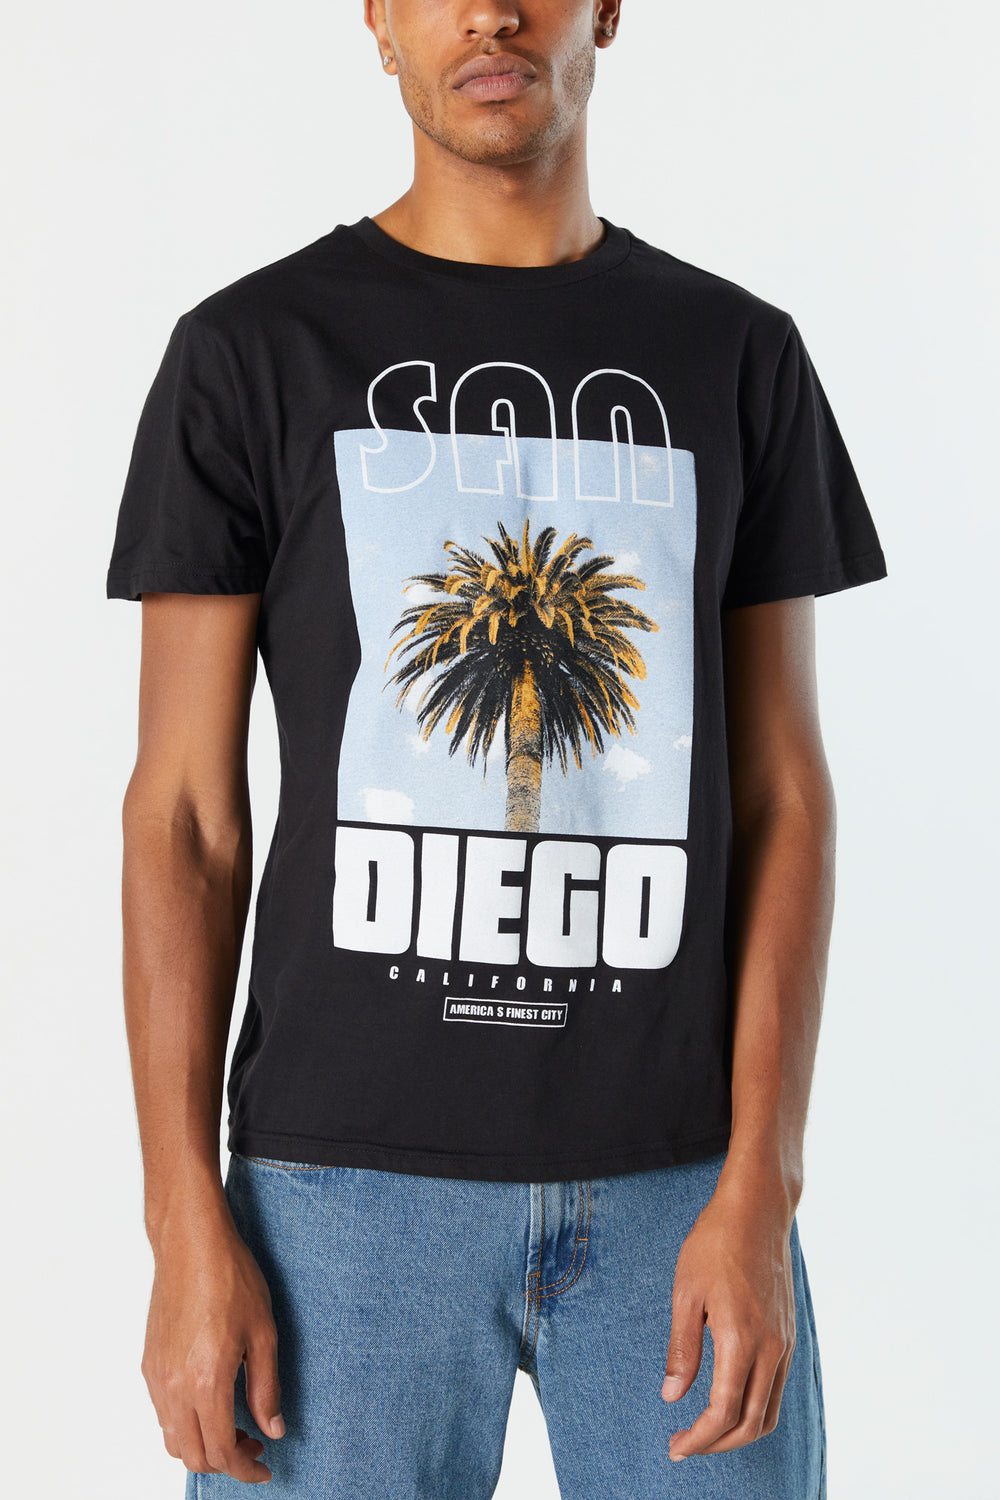 San Diego Graphic T-Shirt San Diego Graphic T-Shirt 2